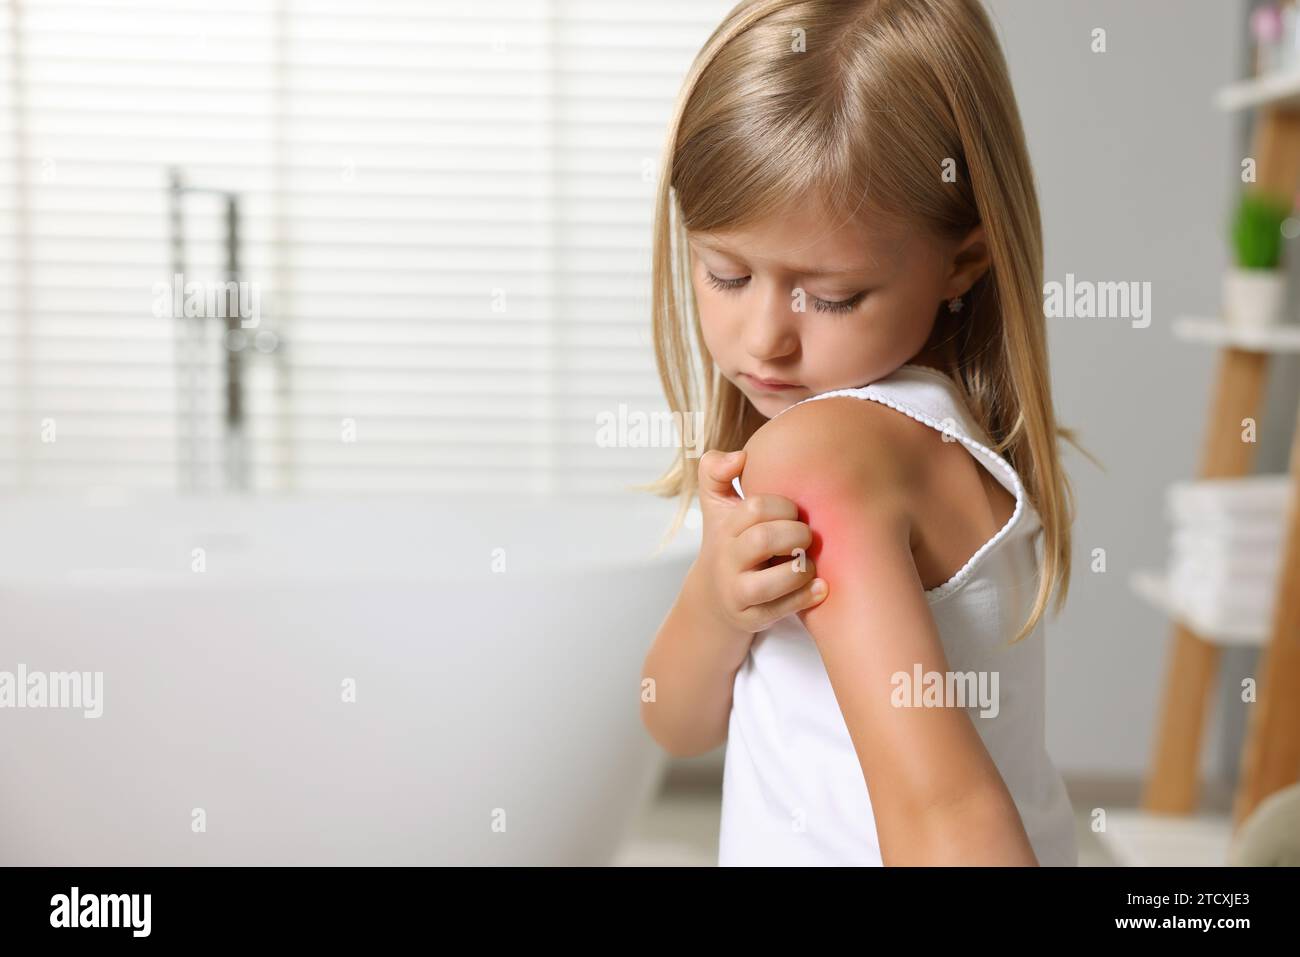 Souffrant d'allergie. Petite fille se grattant l'épaule dans la salle de bain, espace pour le texte Banque D'Images